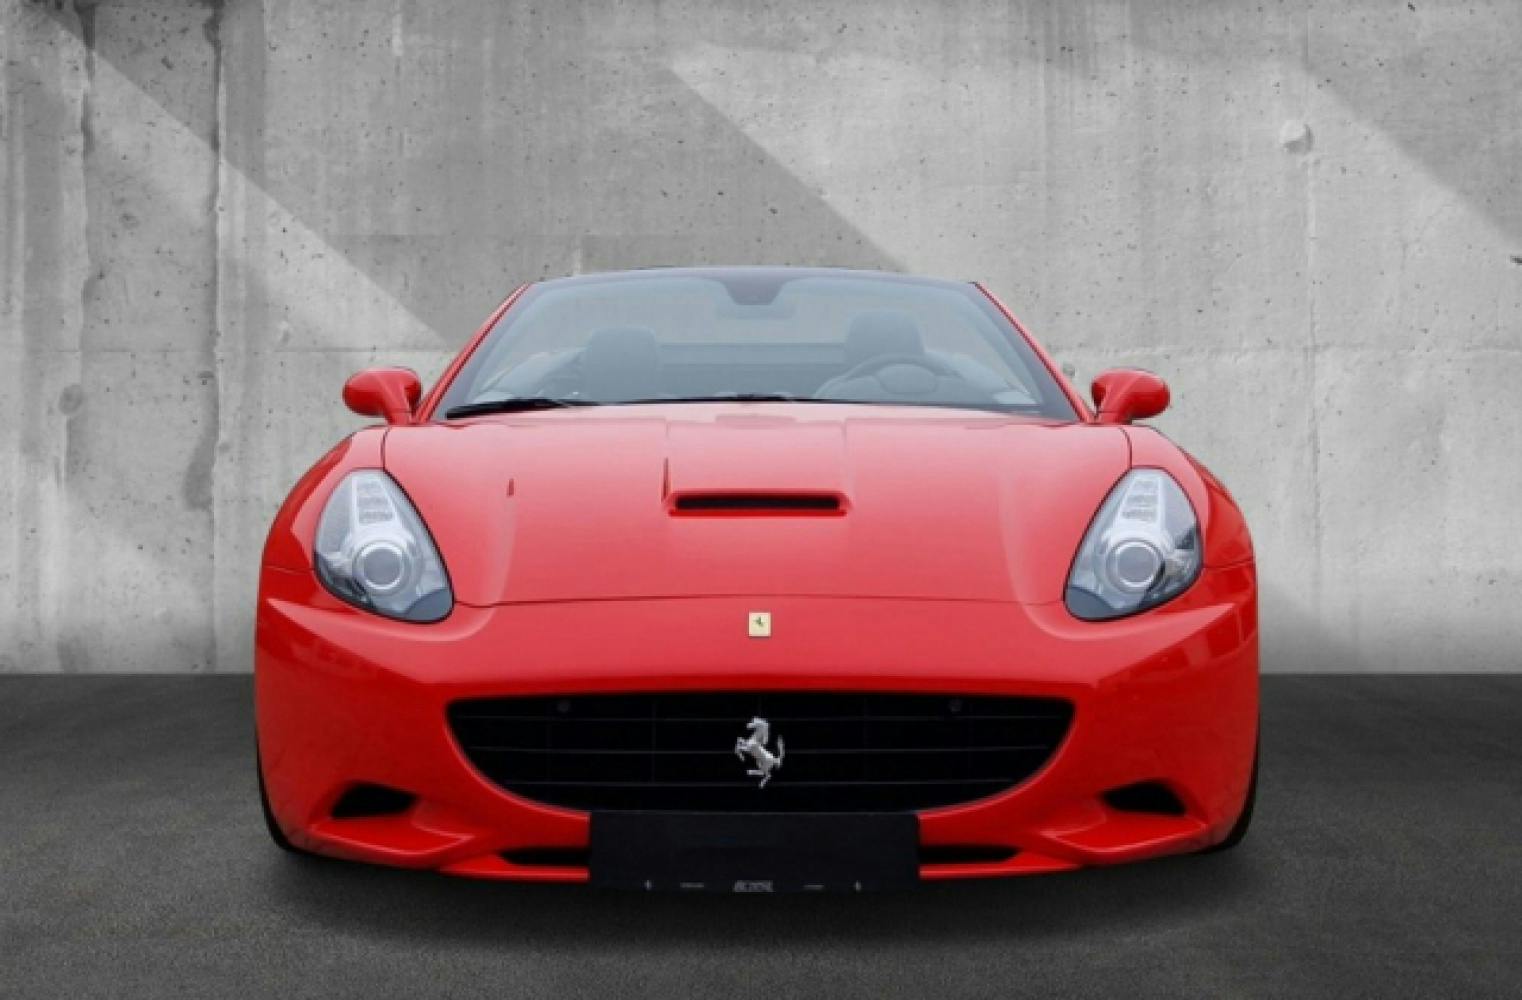 Ferrari California selber fahren | 460 PS | 60 Minuten